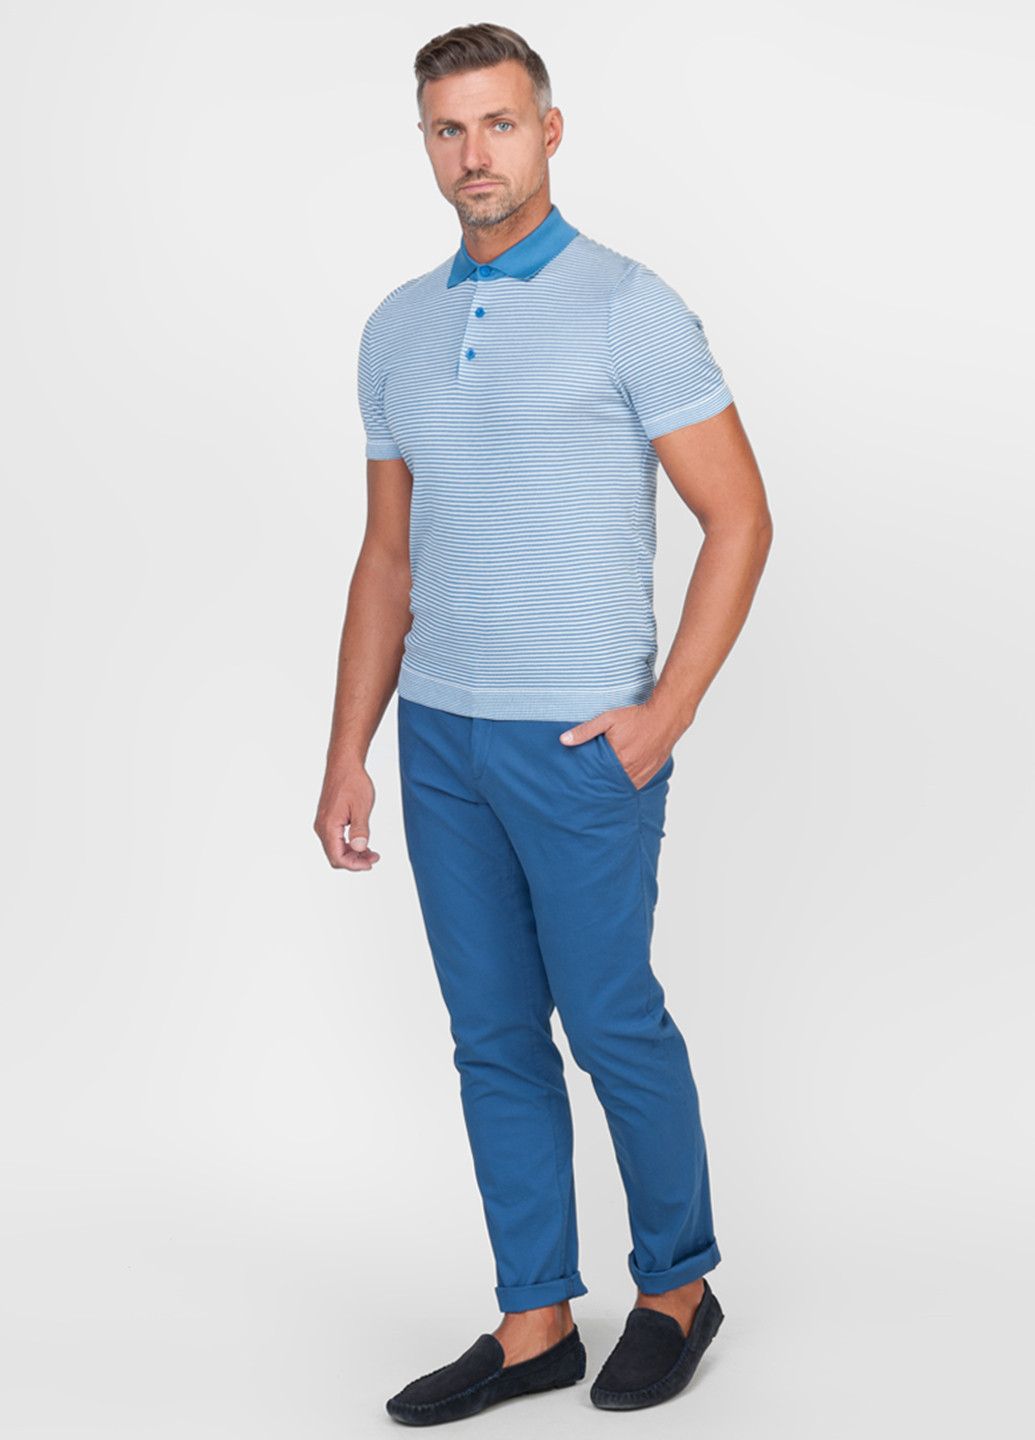 Голубой футболка-поло для мужчин Arber в полоску